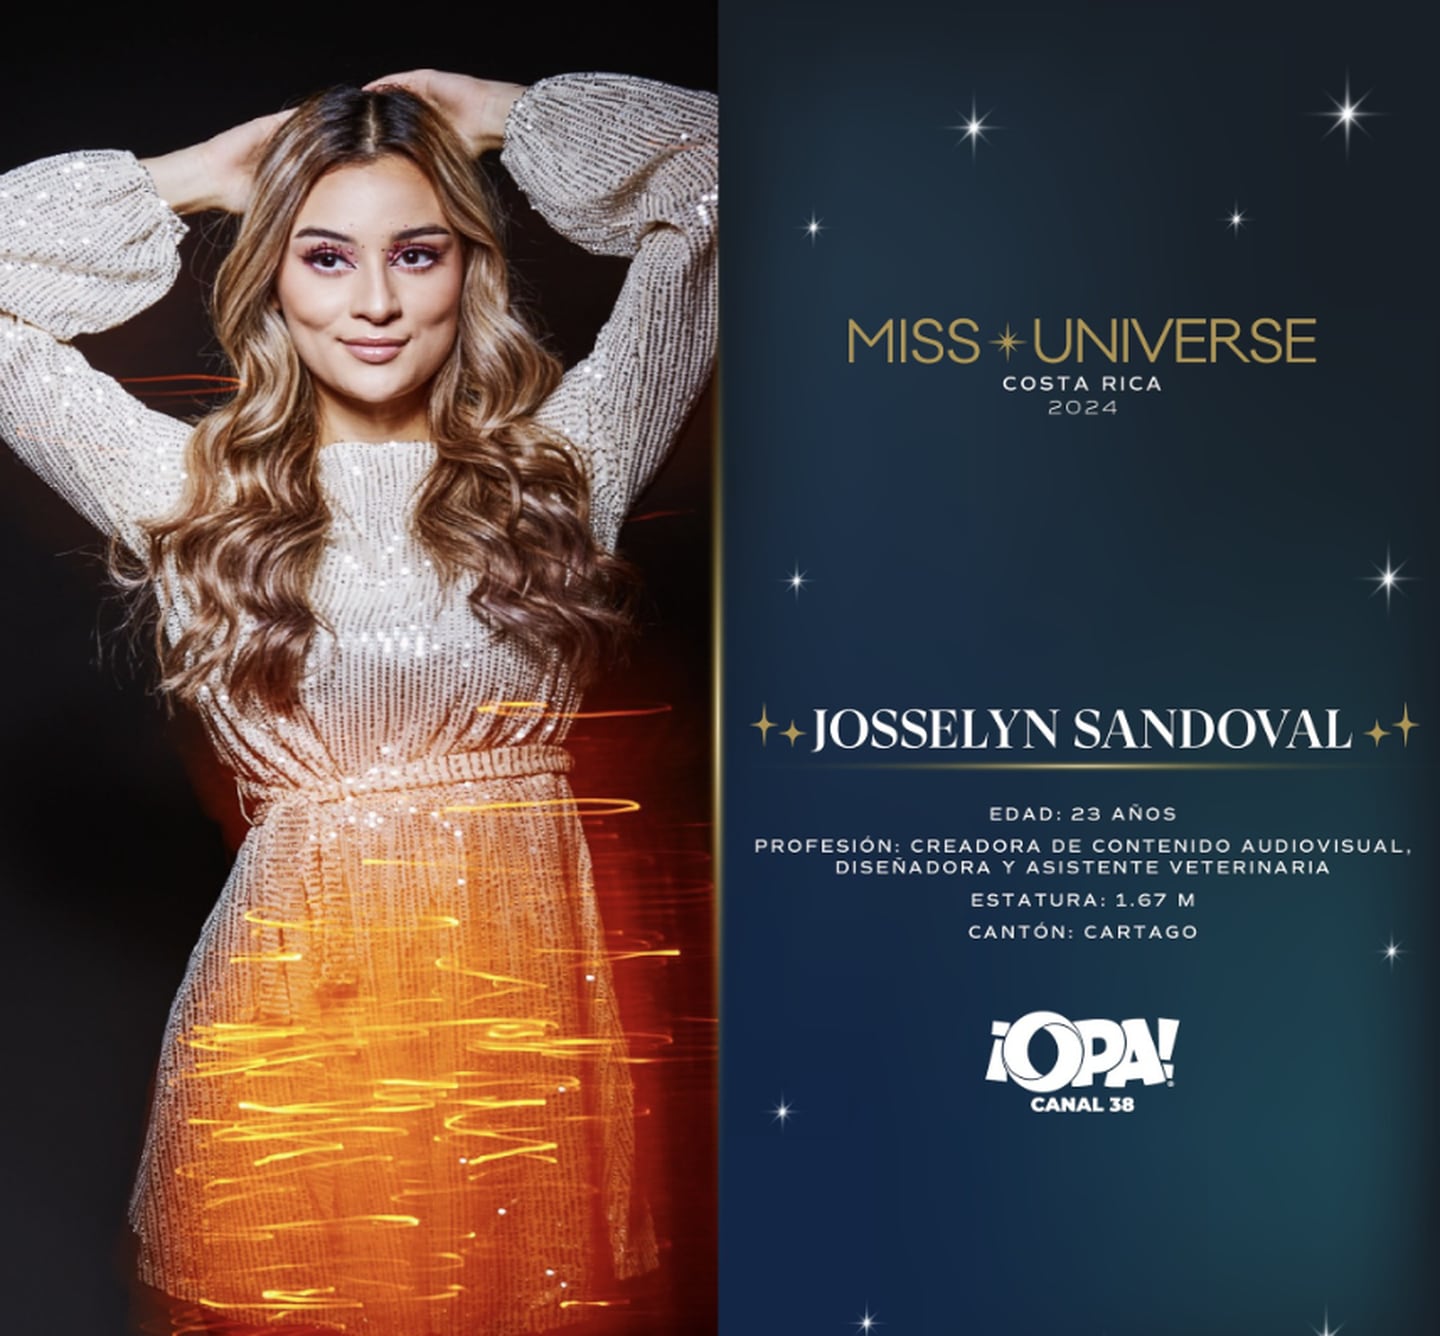 Miss Universe Costa Rica reveló a sus candidatas para la edición 2024 del concurso.